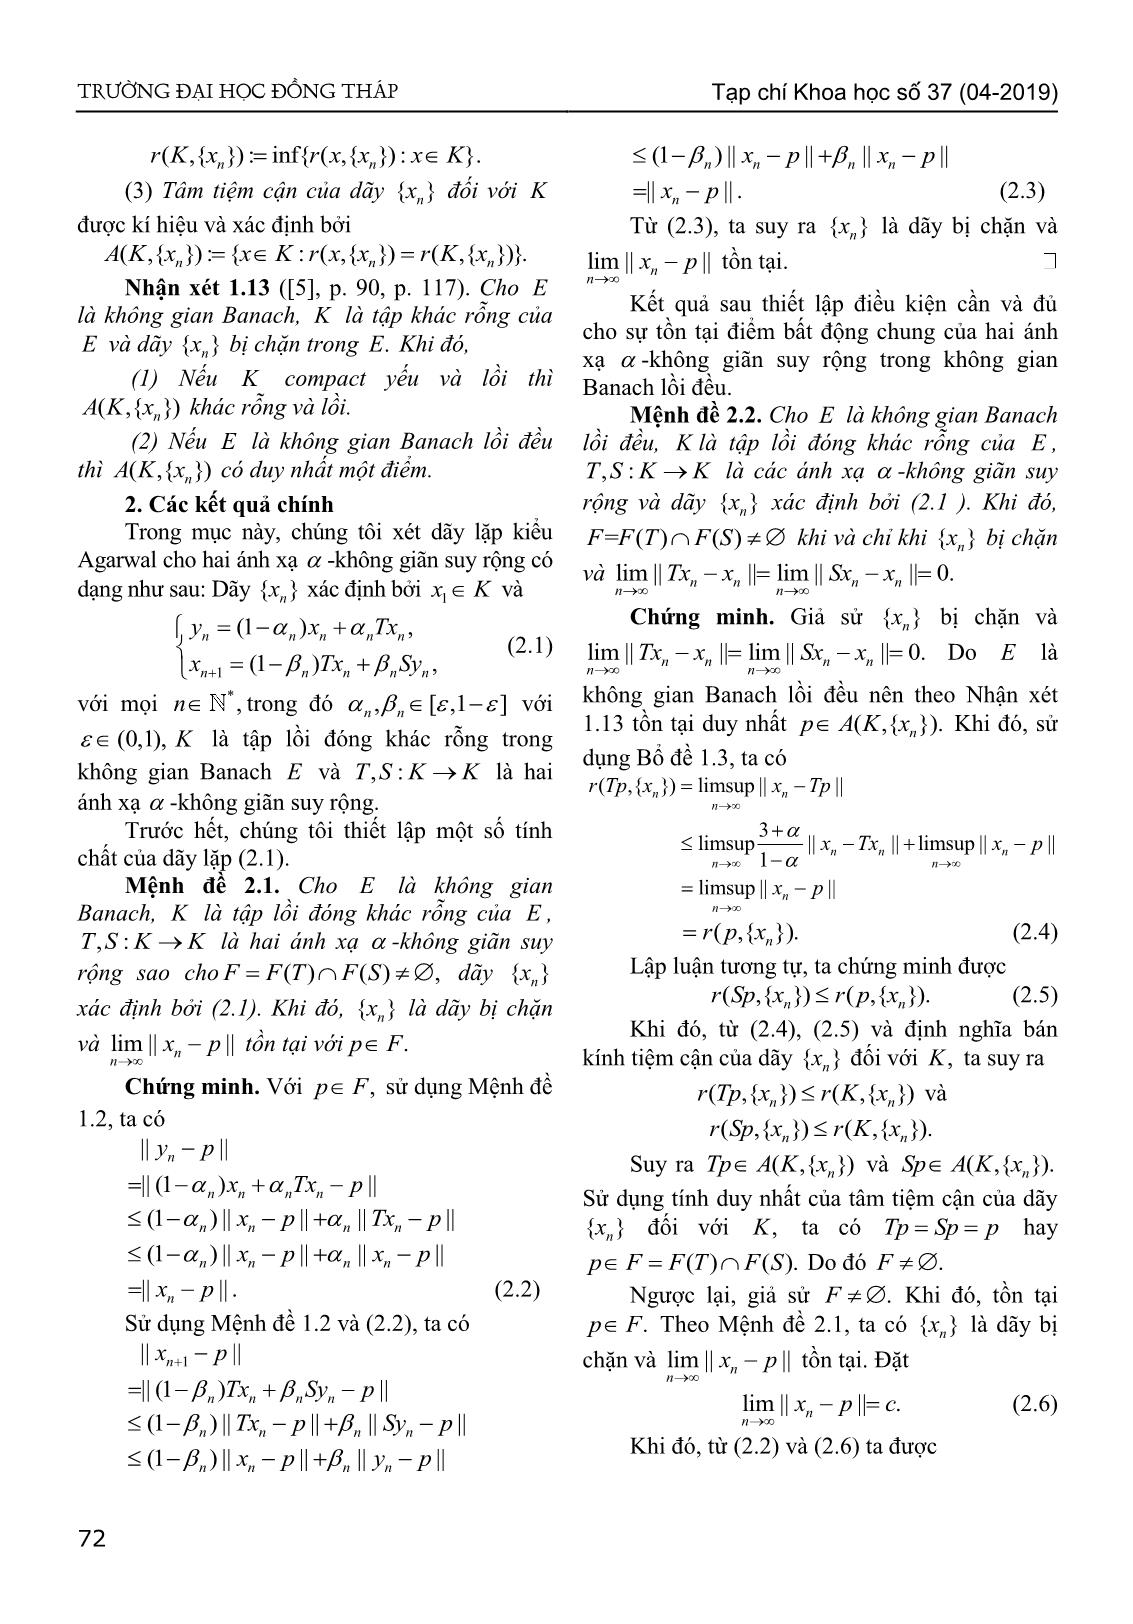 Sự hội tụ của dãy lặp kiểu Agarwal đến điểm bất động chung của hai ánh xạ - Không giãn suy rộng trong không gian Banach lồi đều trang 3